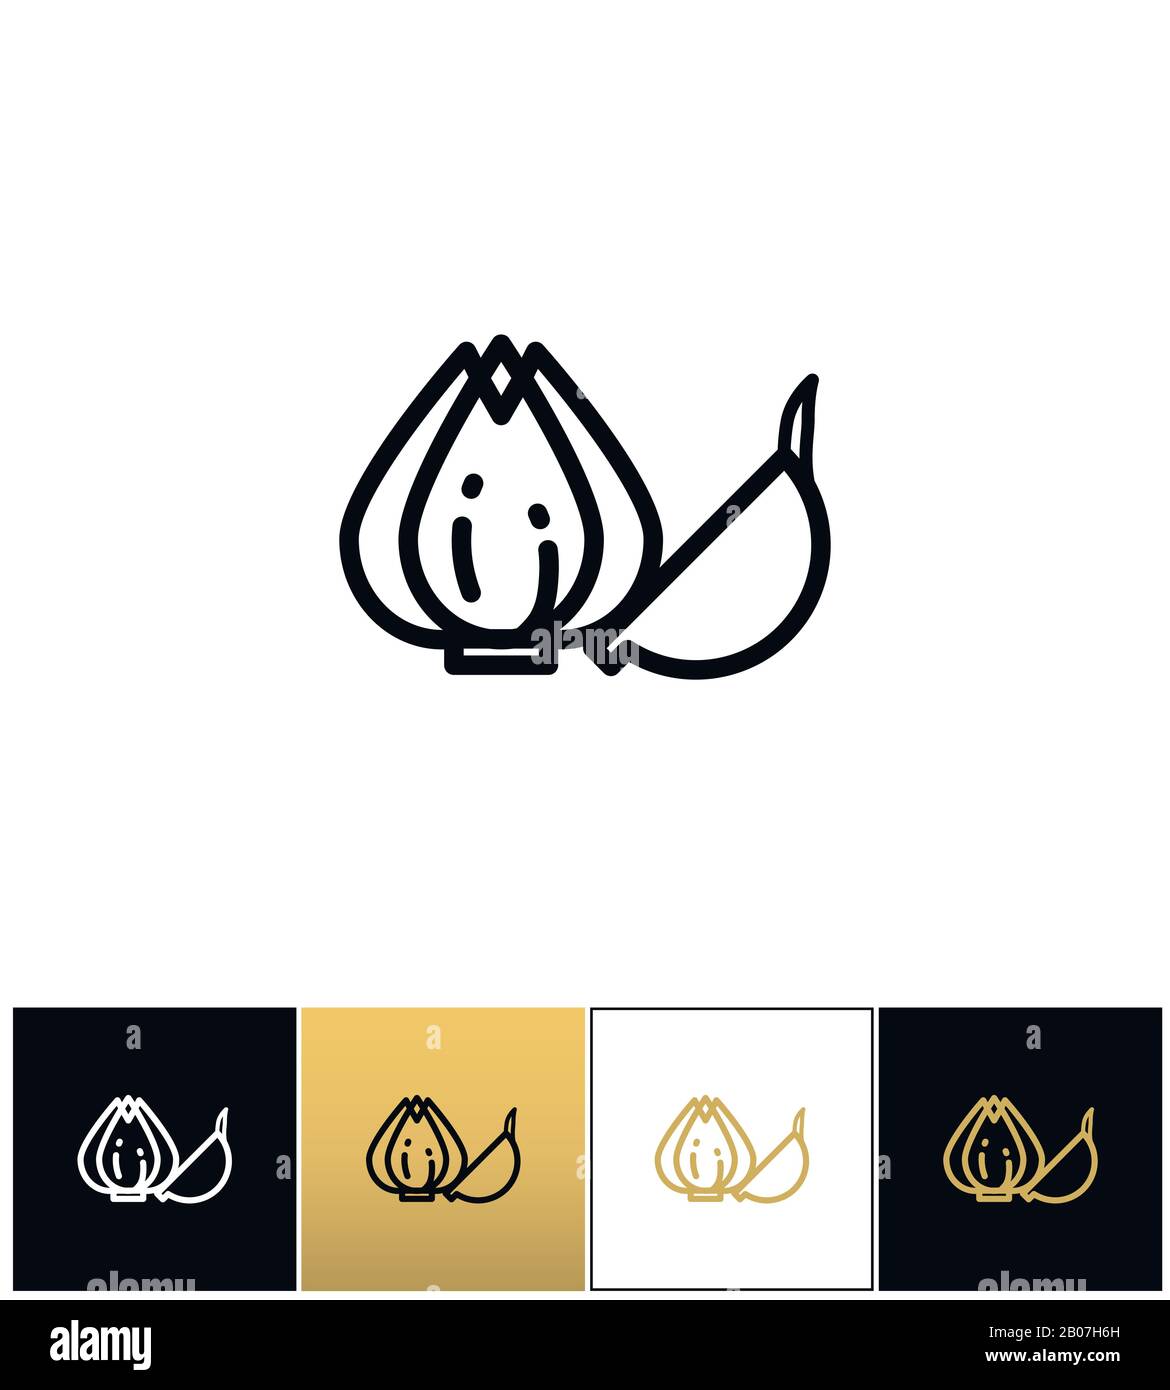 Garlic bulb or allium plant vector icon. Garlic bulb or allium plant pictograph on black, white and gold backgrounds Stock Vector